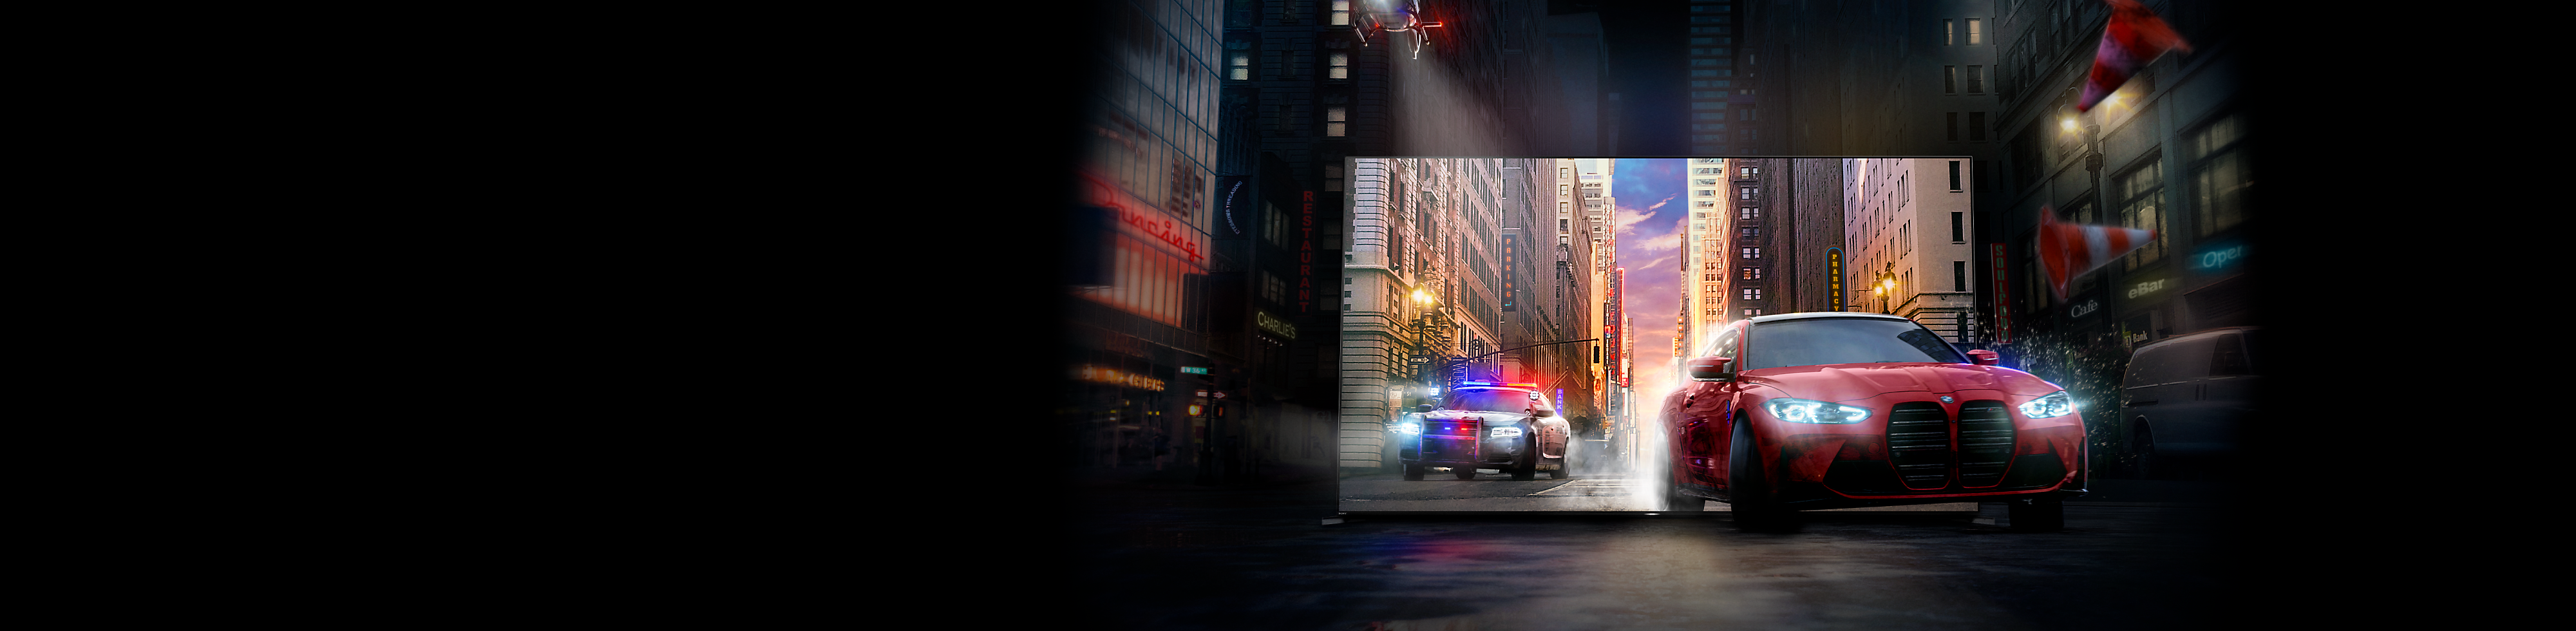 Un auto rojo perseguido por una patrulla conducen fuera de la pantalla del televisor BRAVIA hacia una calle urbana